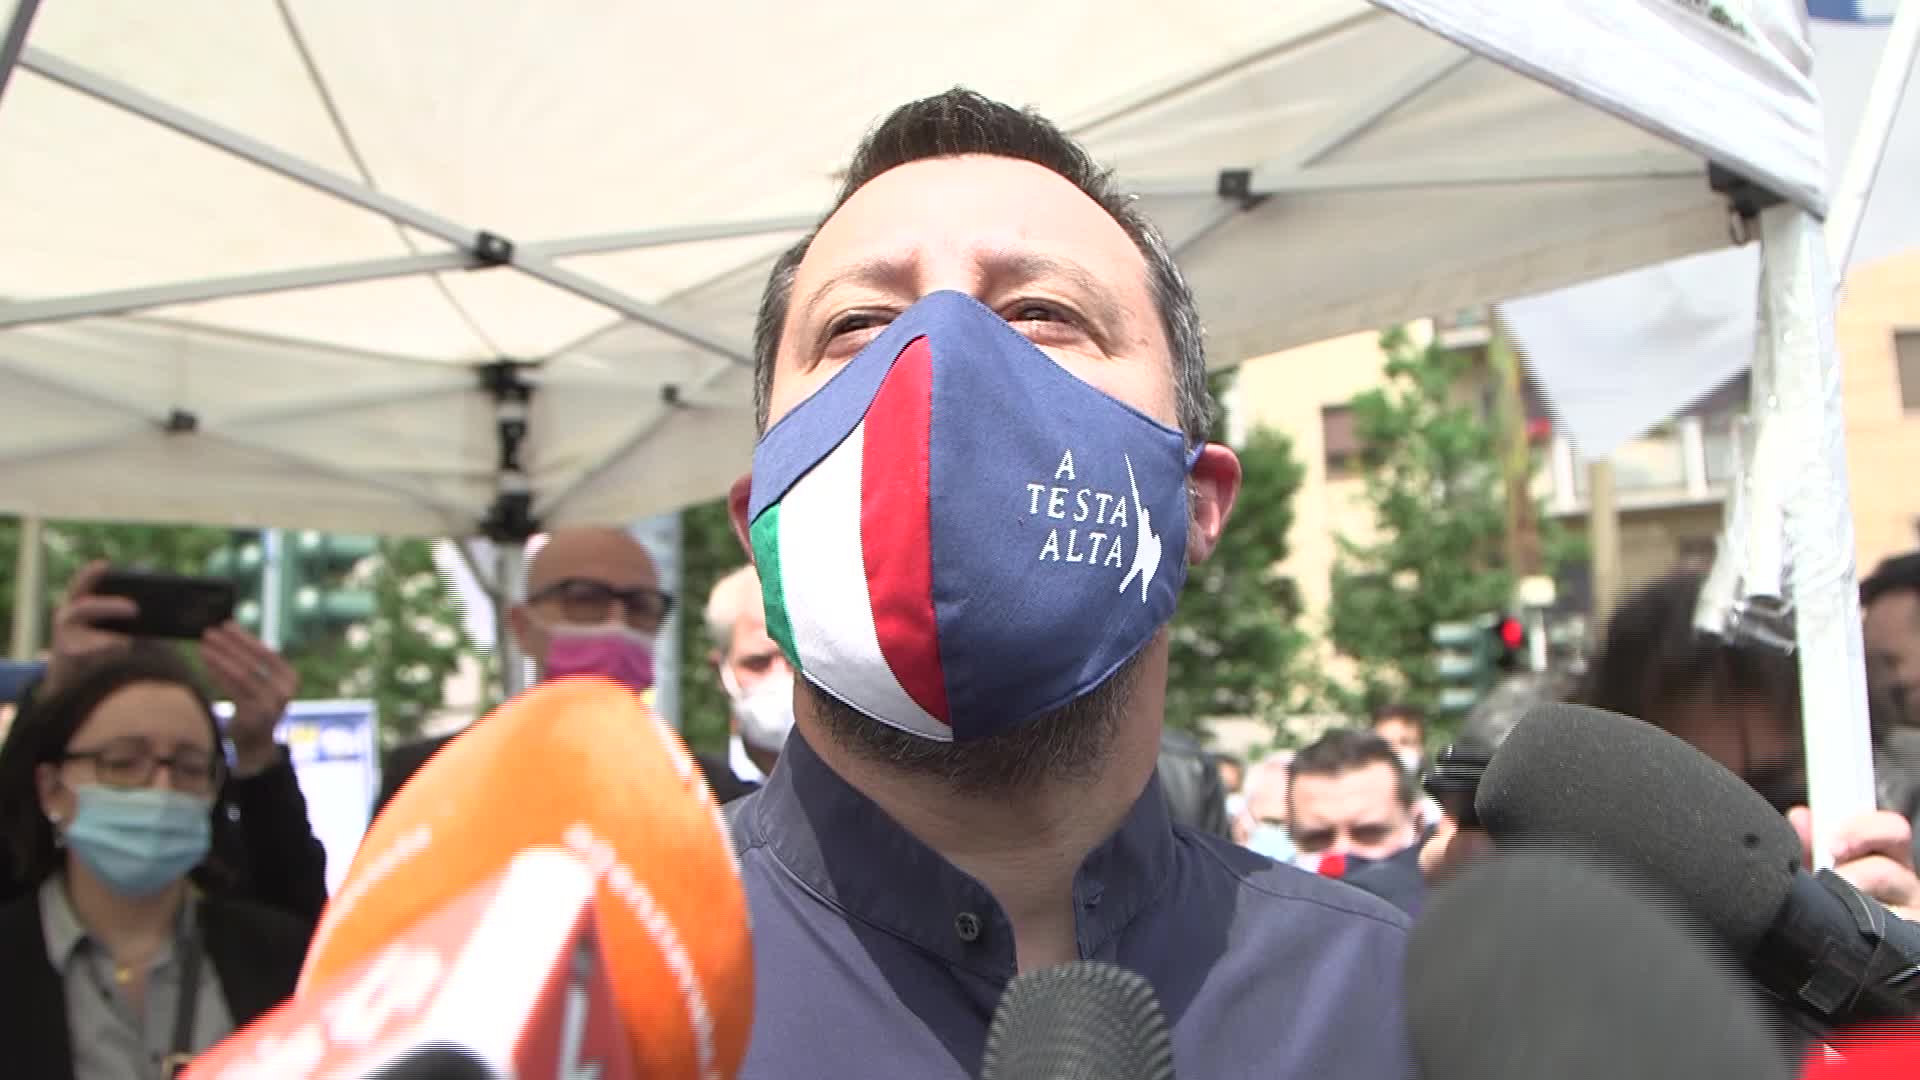 Amministrative, Salvini ironizza: "Vado a Fatima in cerca dell'illuminazione"